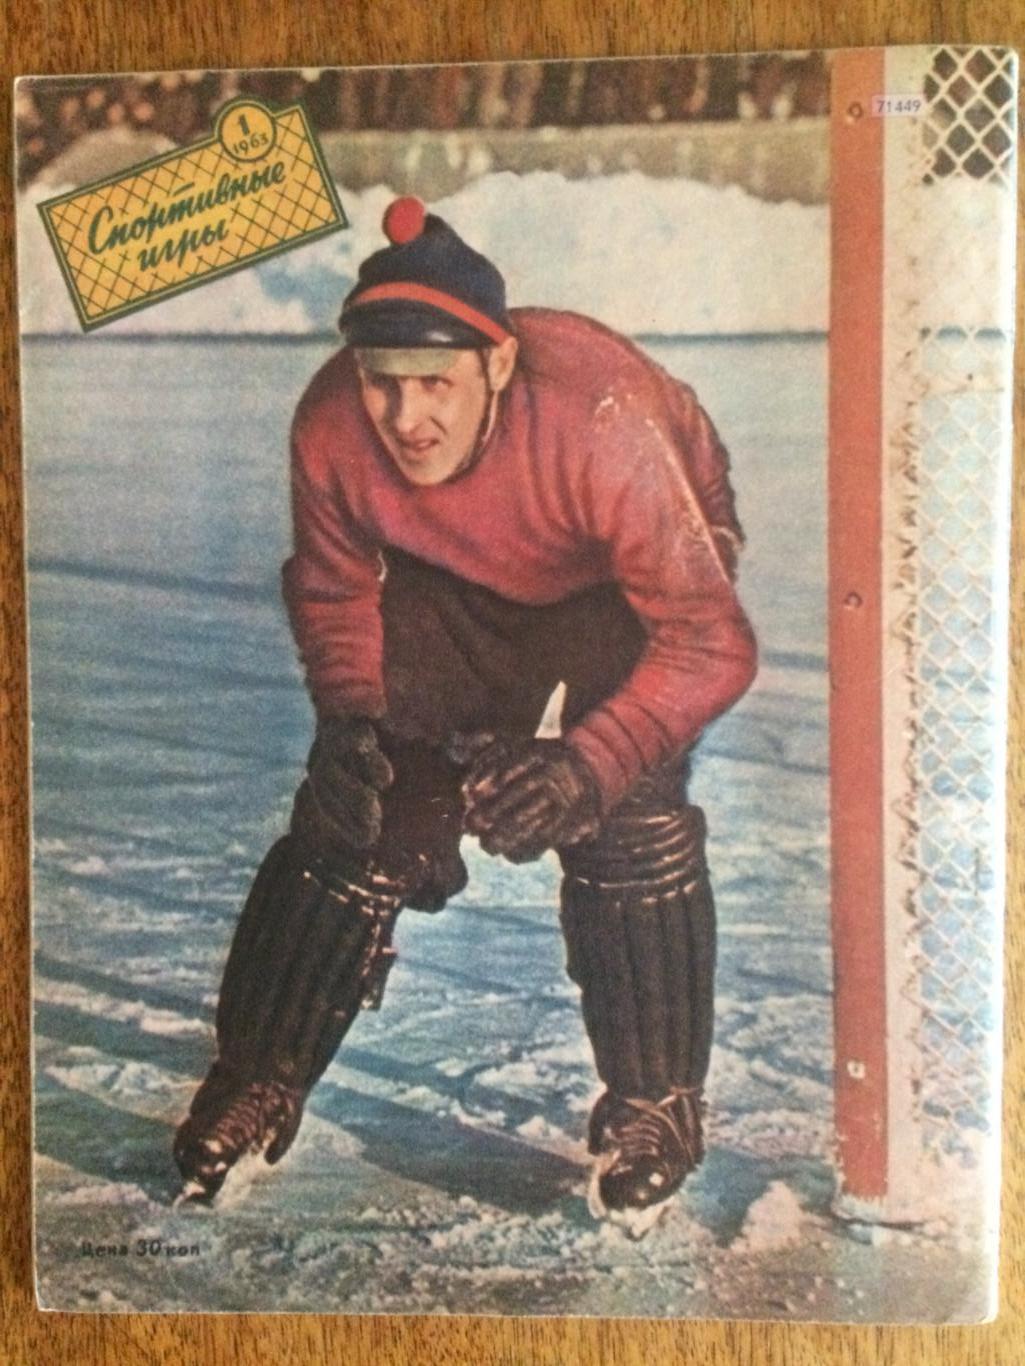 Журнал Спортивные игры №1 1963 1